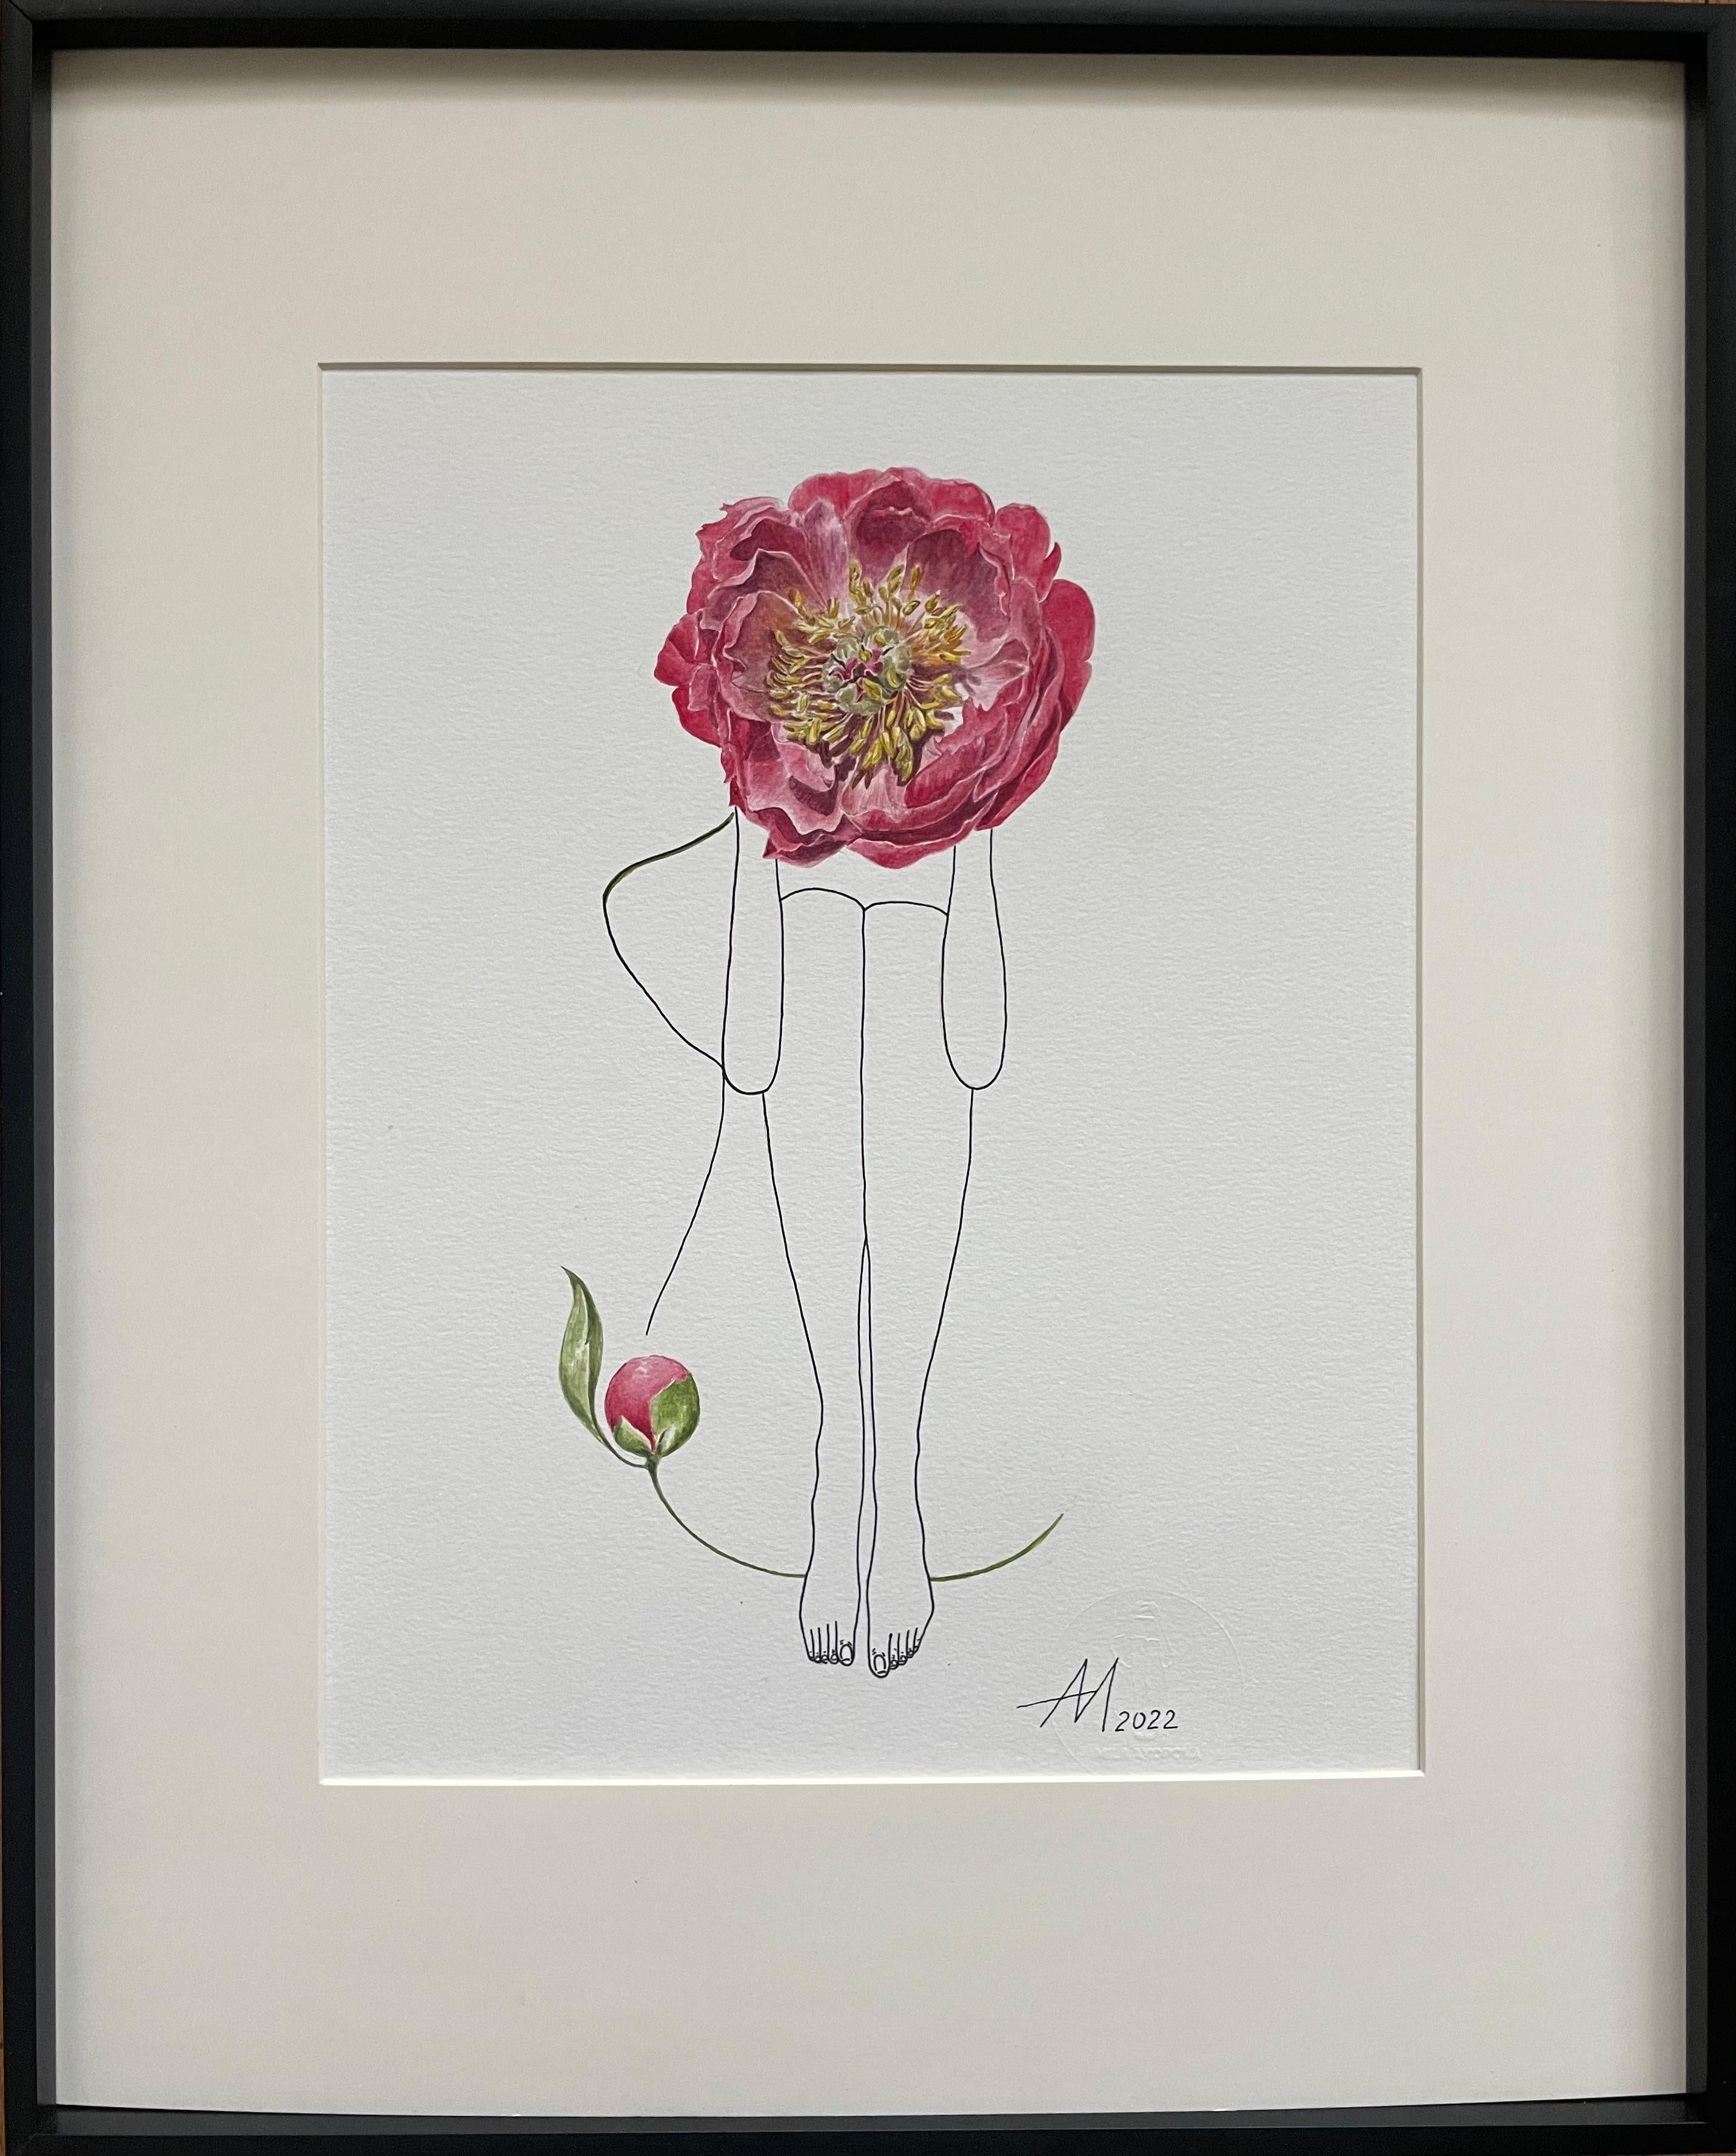 Abstract Drawing Mila Akopova - Corail, pivoine, dessin au trait d'une figure de femme avec fleur